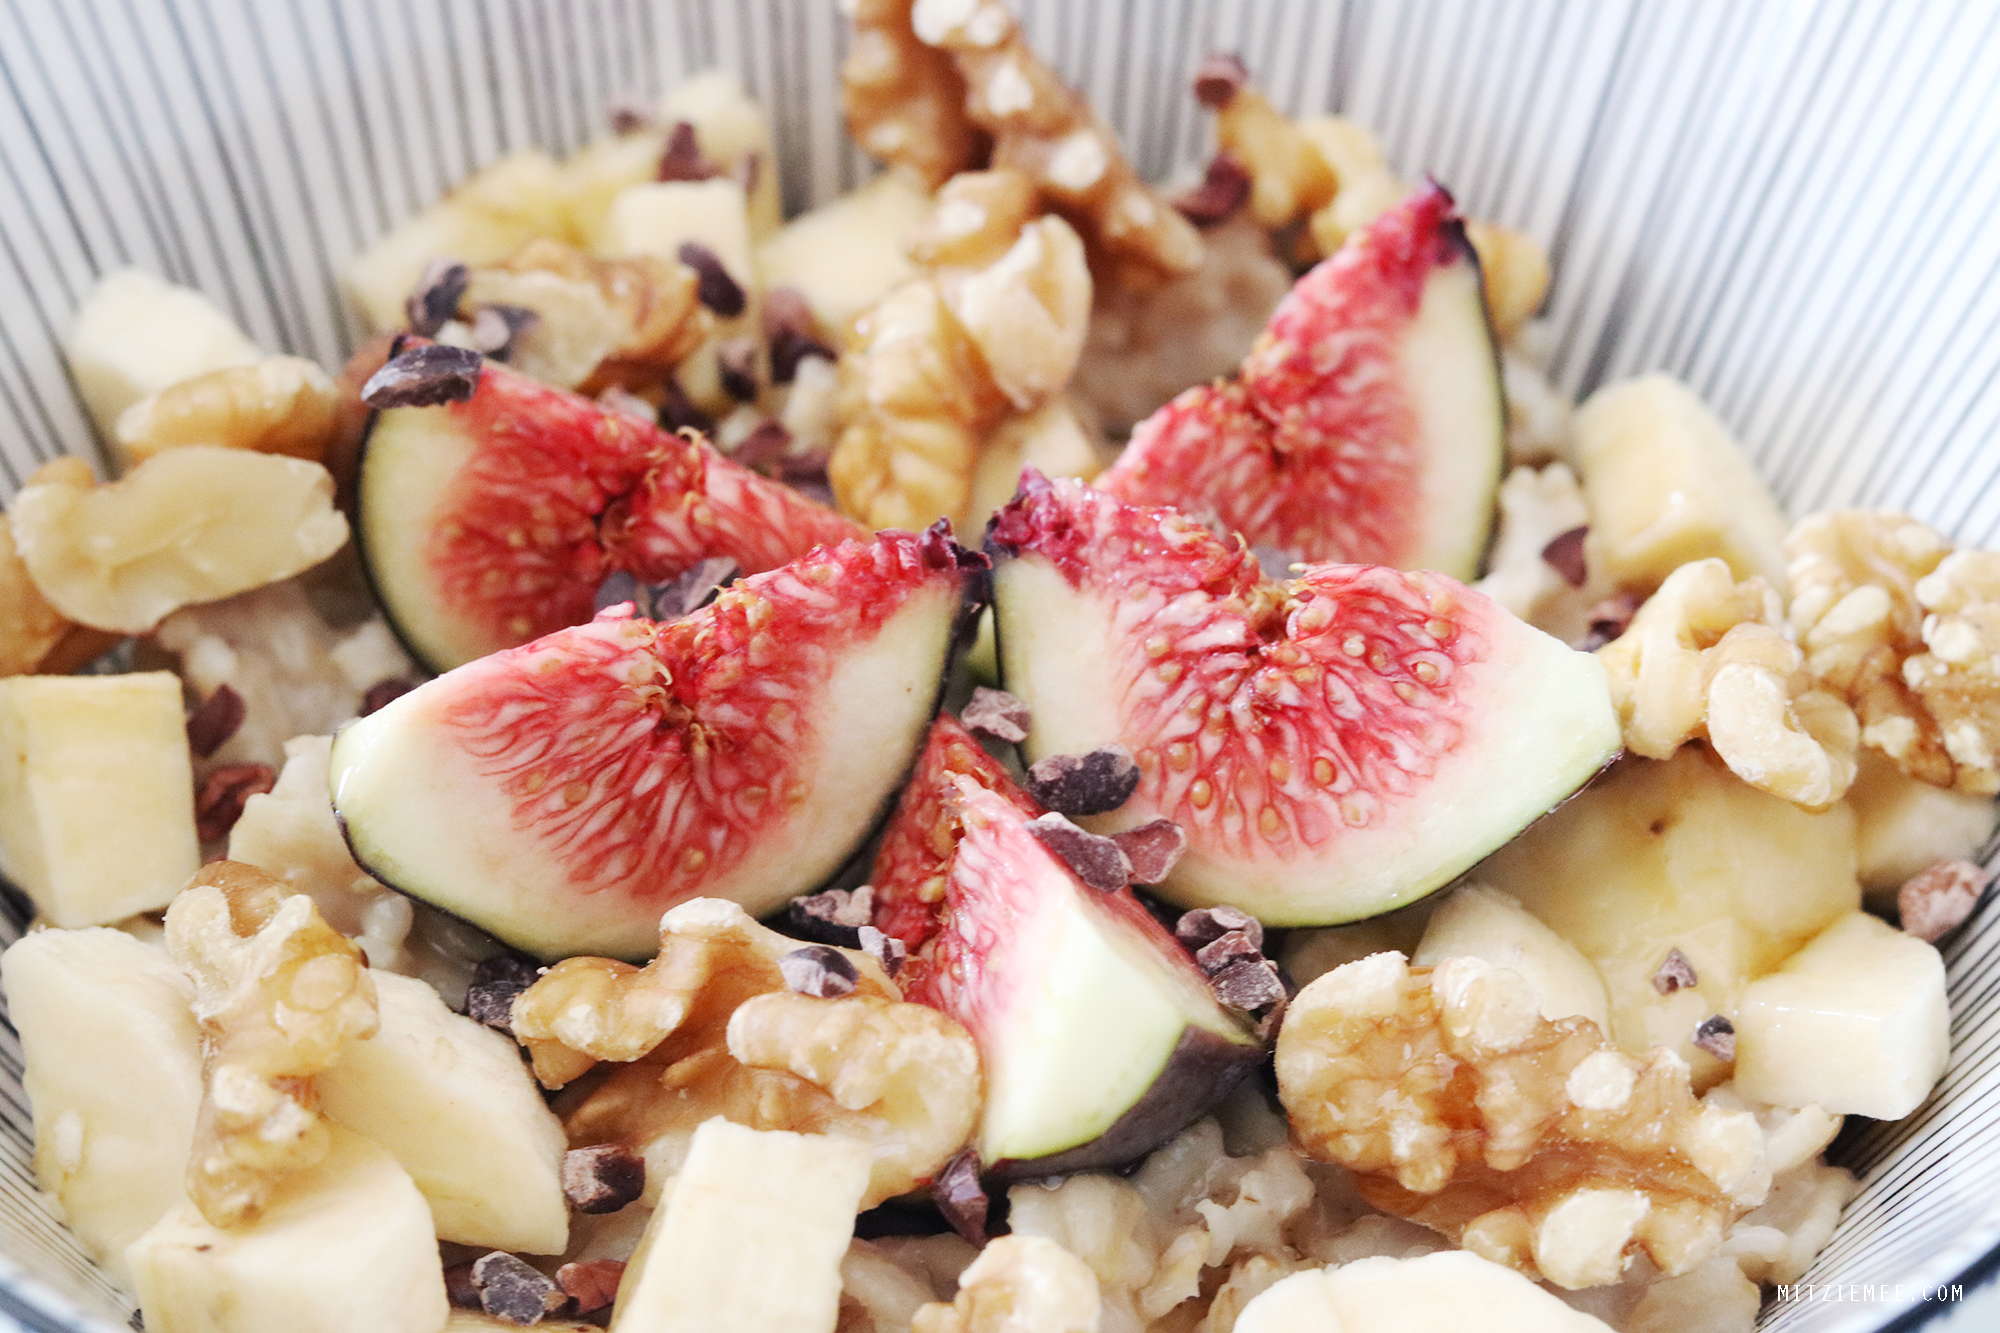 Oatmeal with almond milk - Breakfast recipe